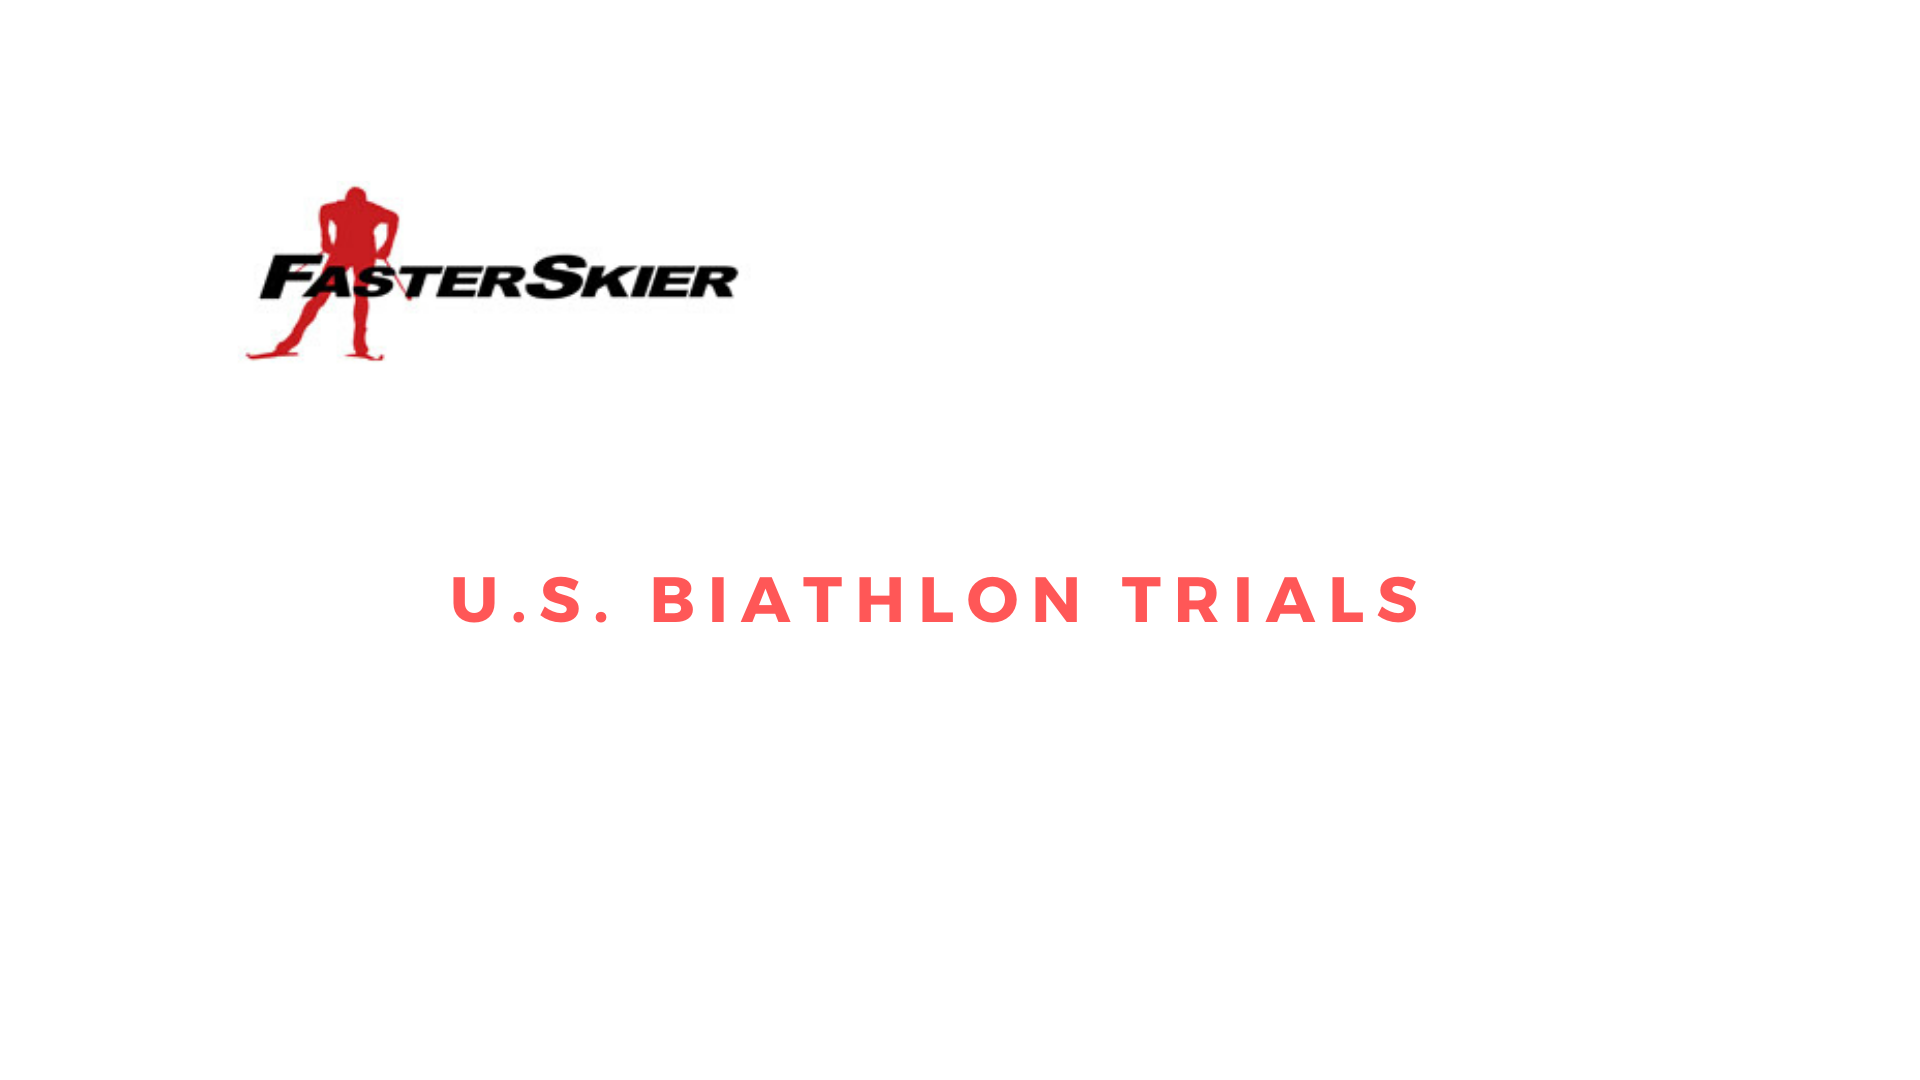 Day Two: U.S. Biathlon Fall Team Trials